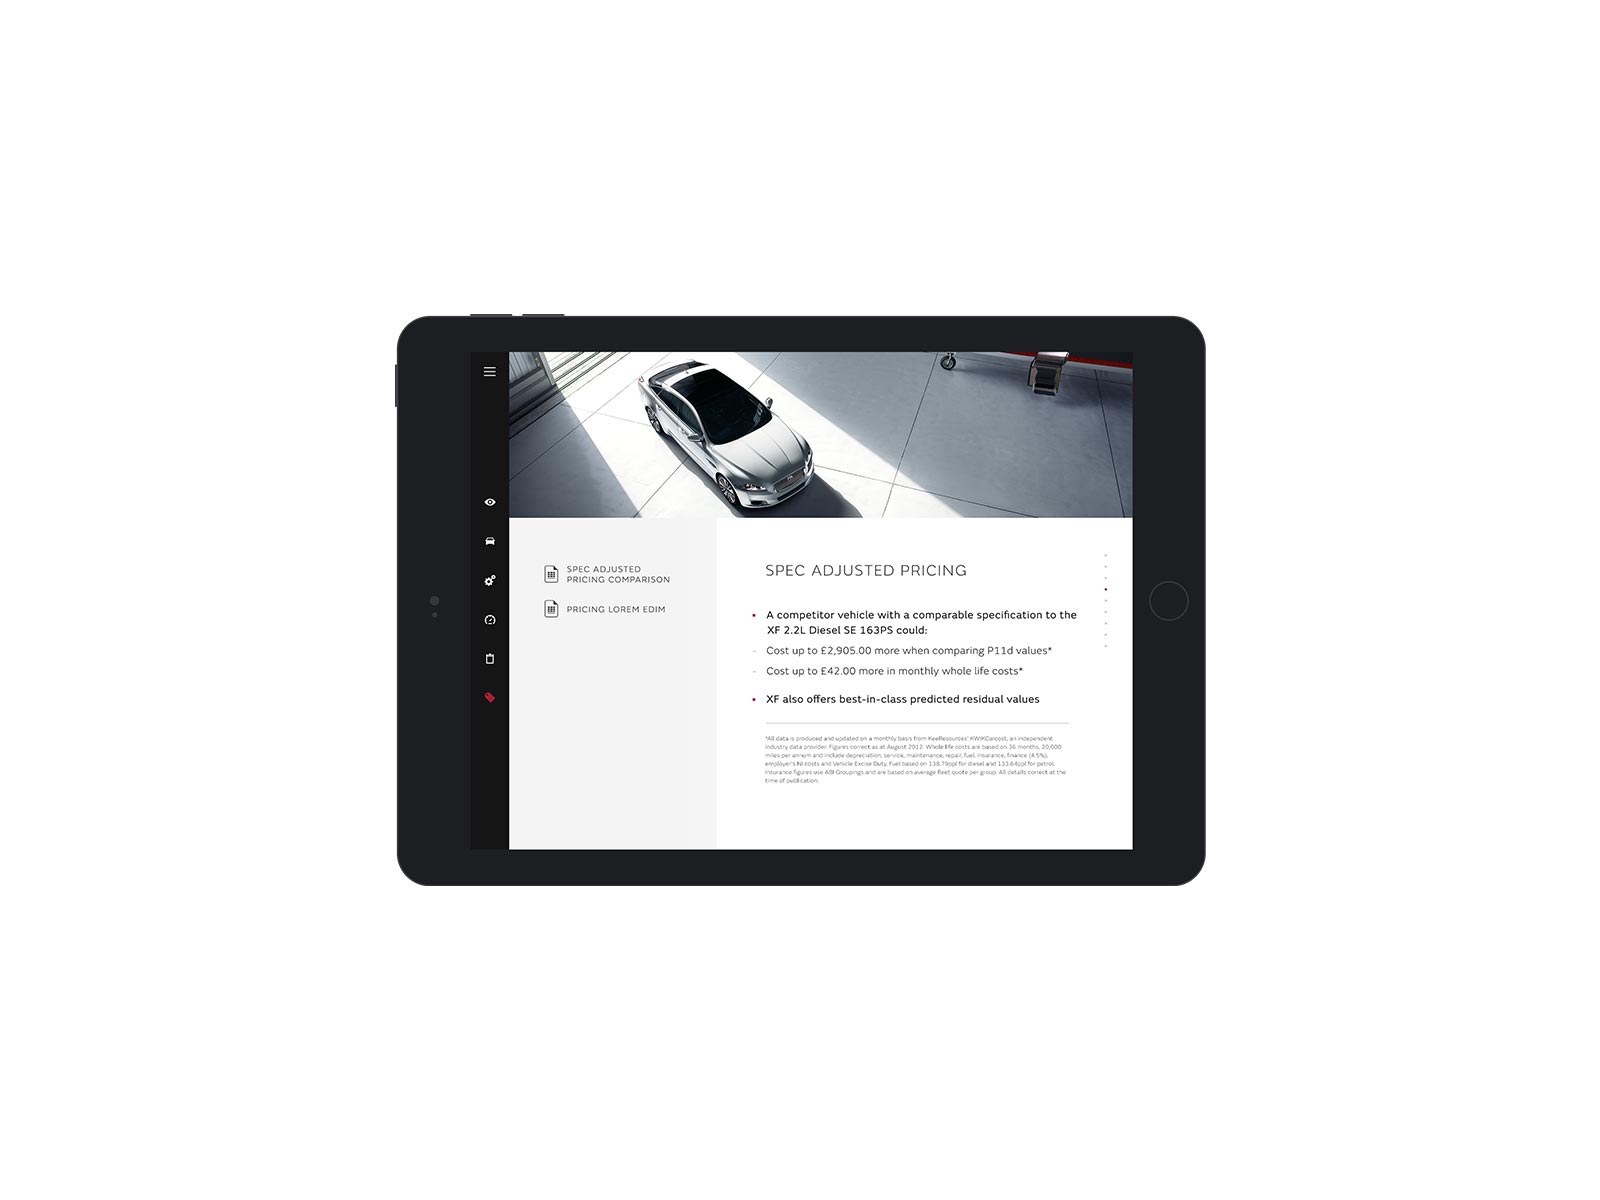 jaguar-tablet-pricing-screen_01